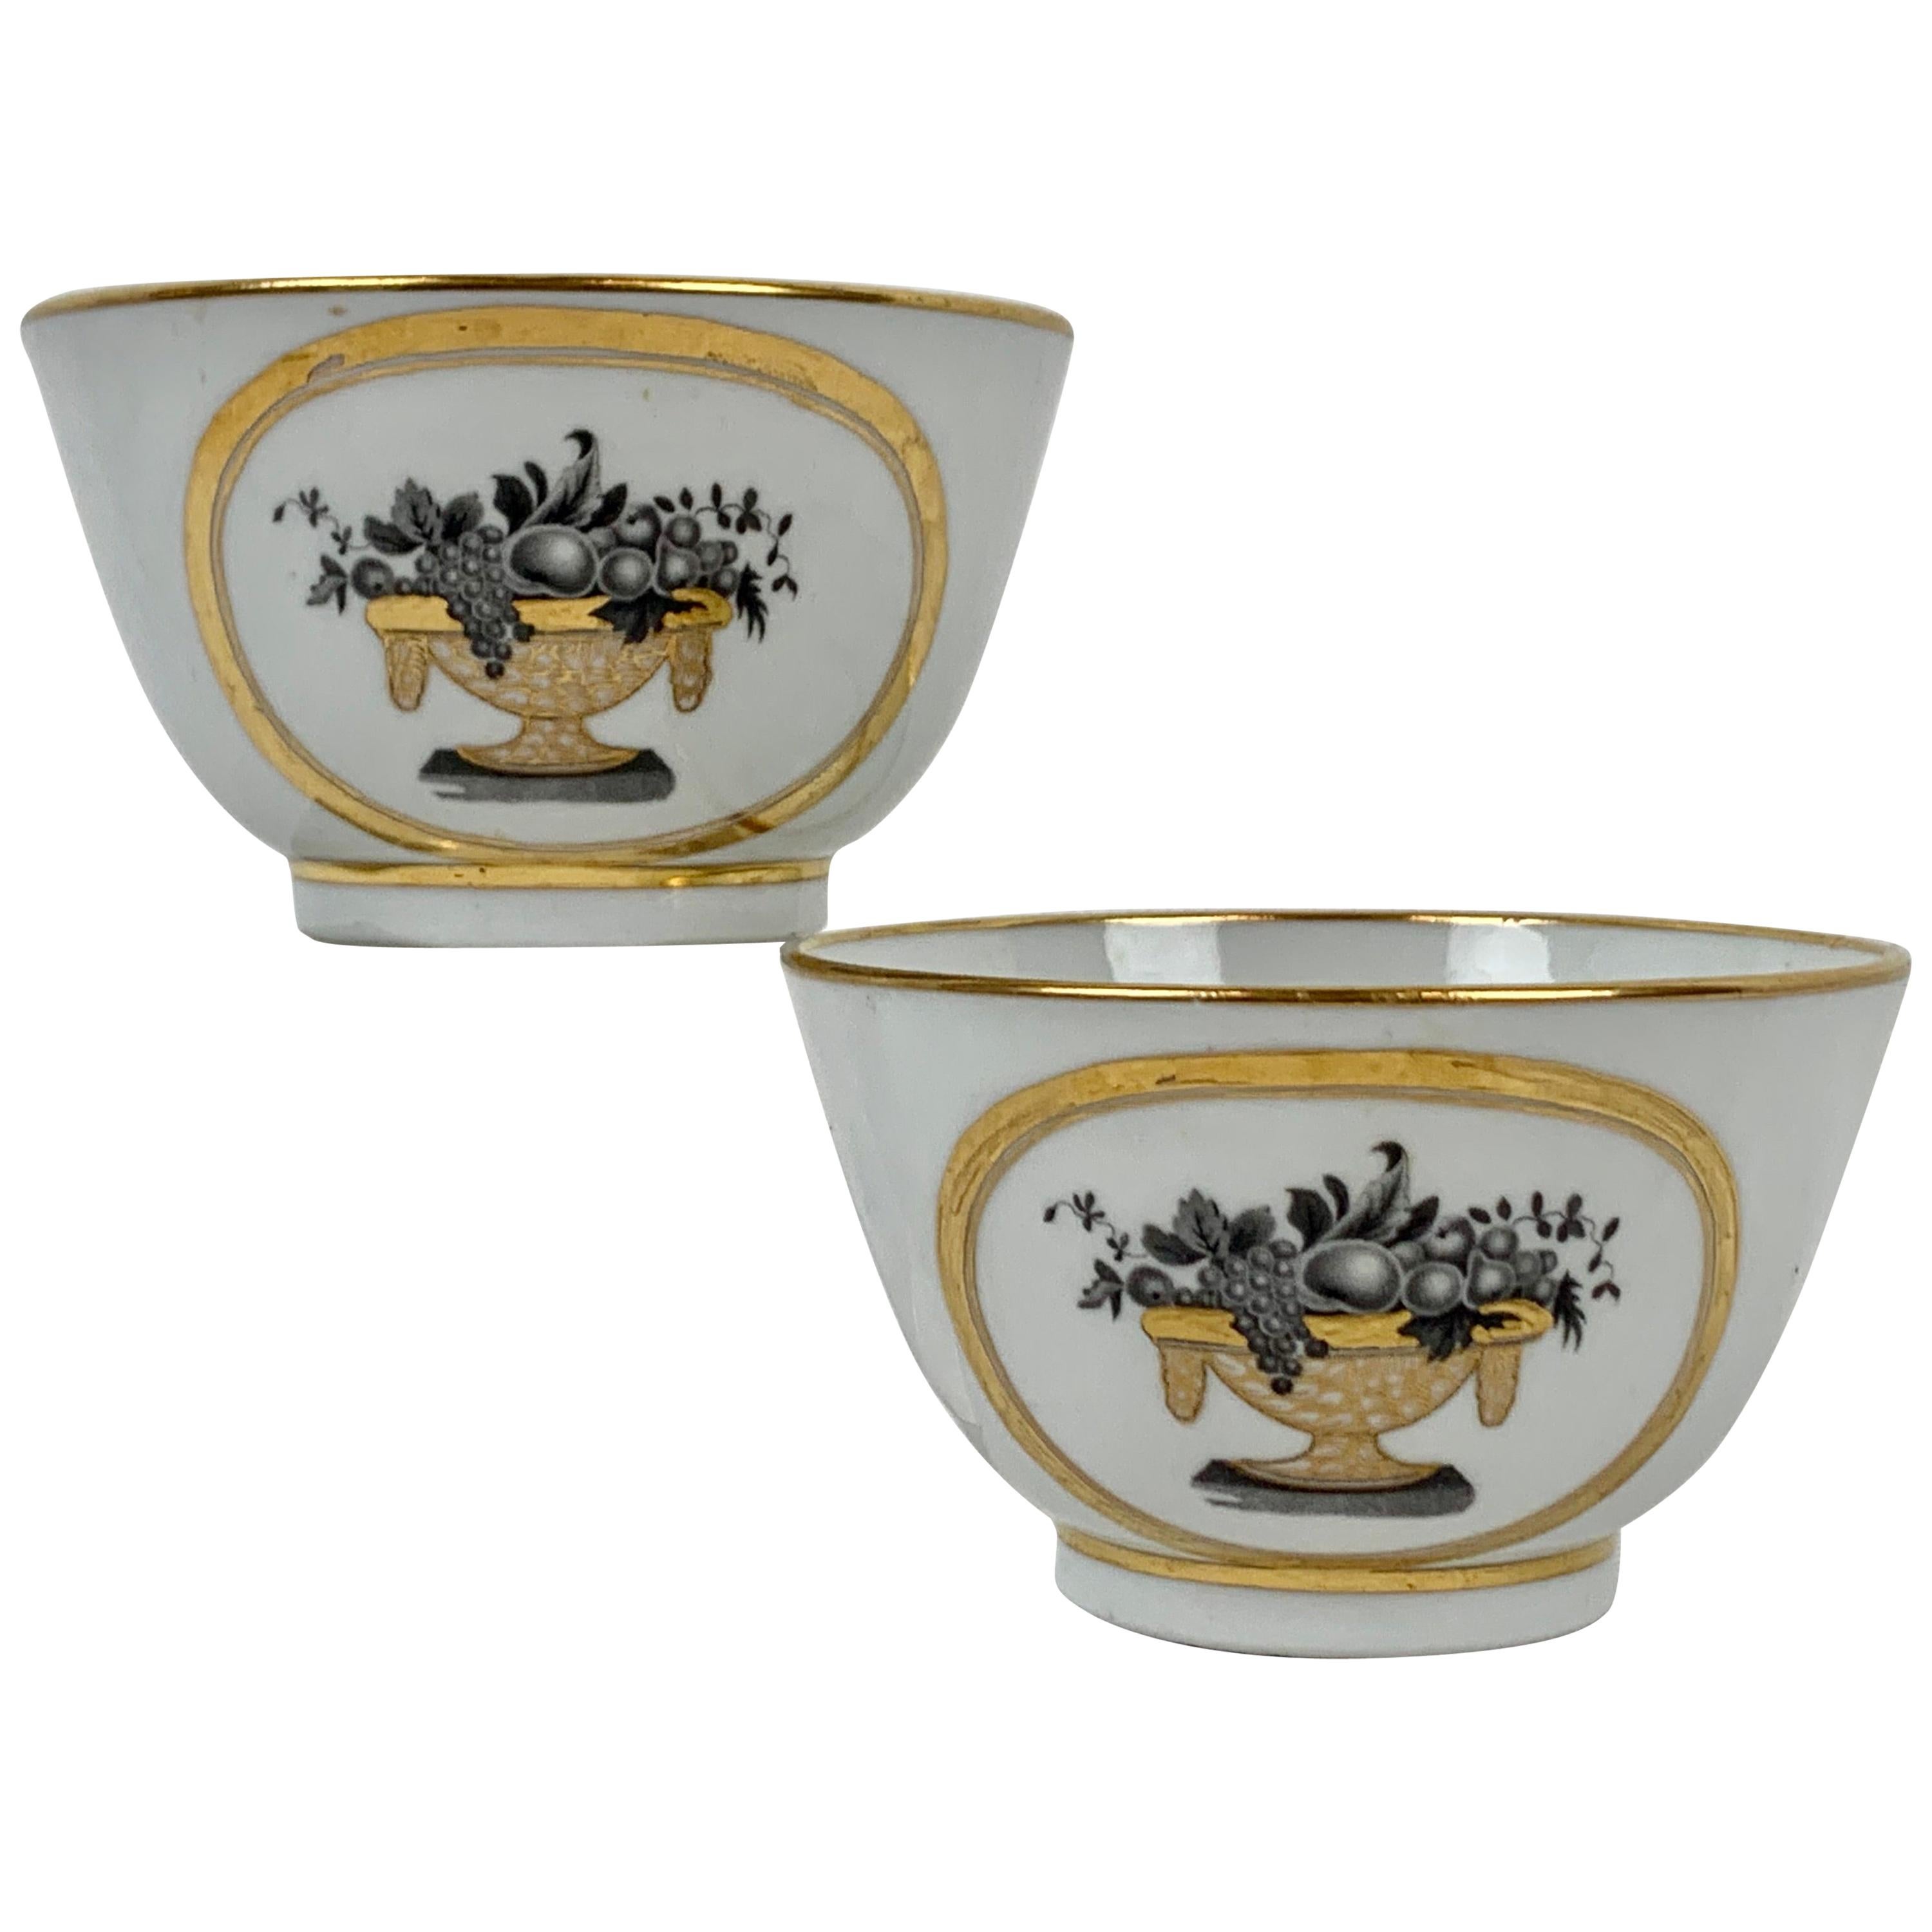 New Hall Porcelain Co. Handleless Porcelain Tea Bowls En Grisaille-A Pair 